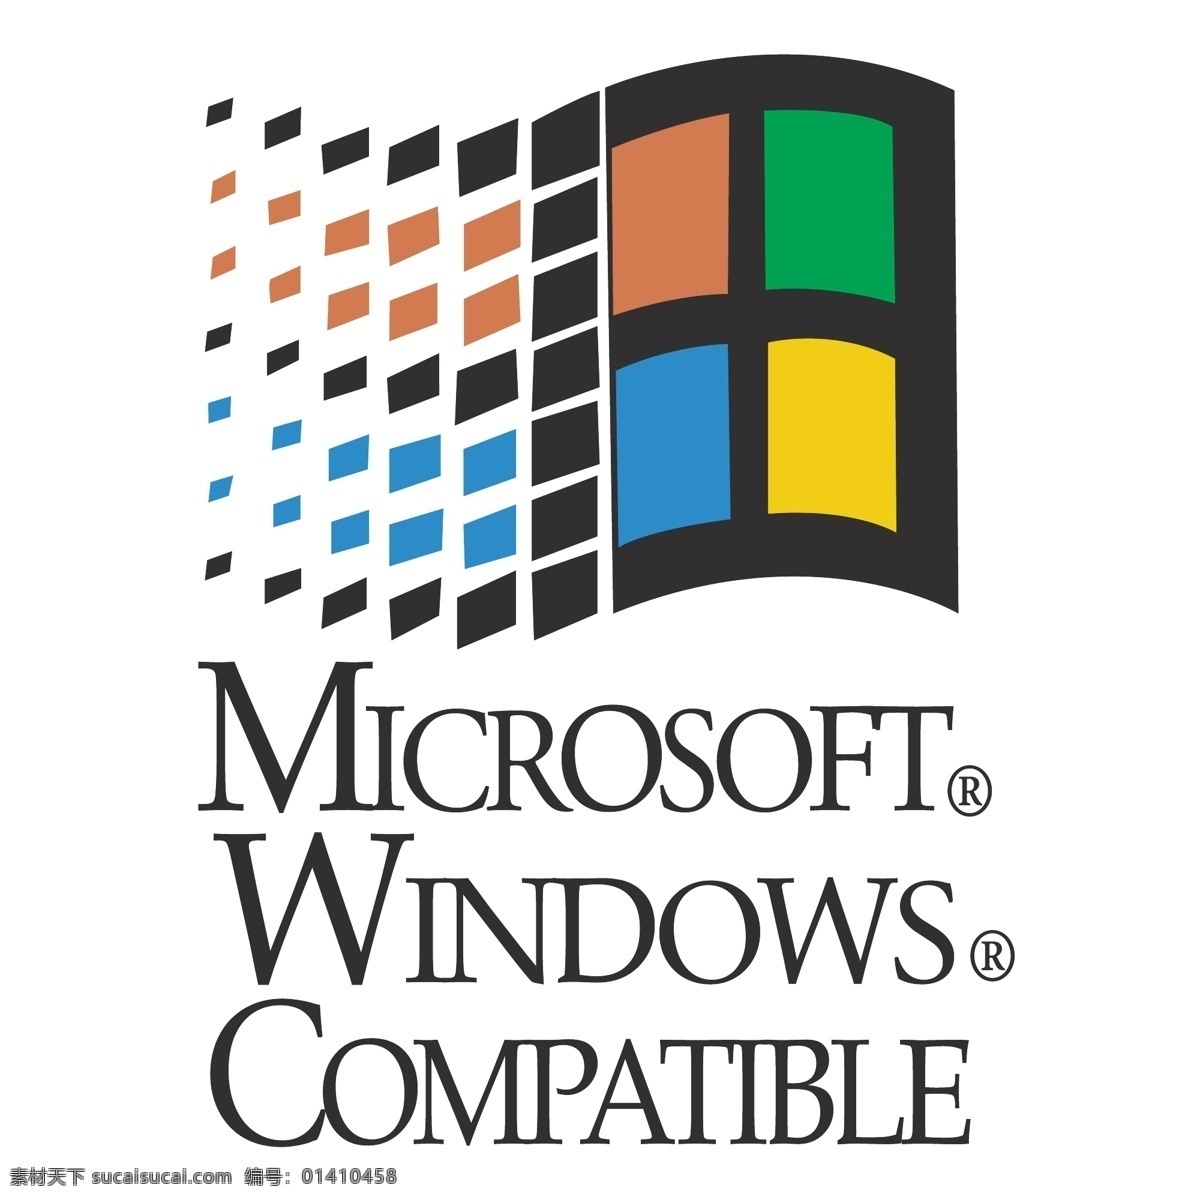 微软 windows 兼容 标识 公司 免费 品牌 品牌标识 商标 矢量标志下载 免费矢量标识 矢量 psd源文件 logo设计